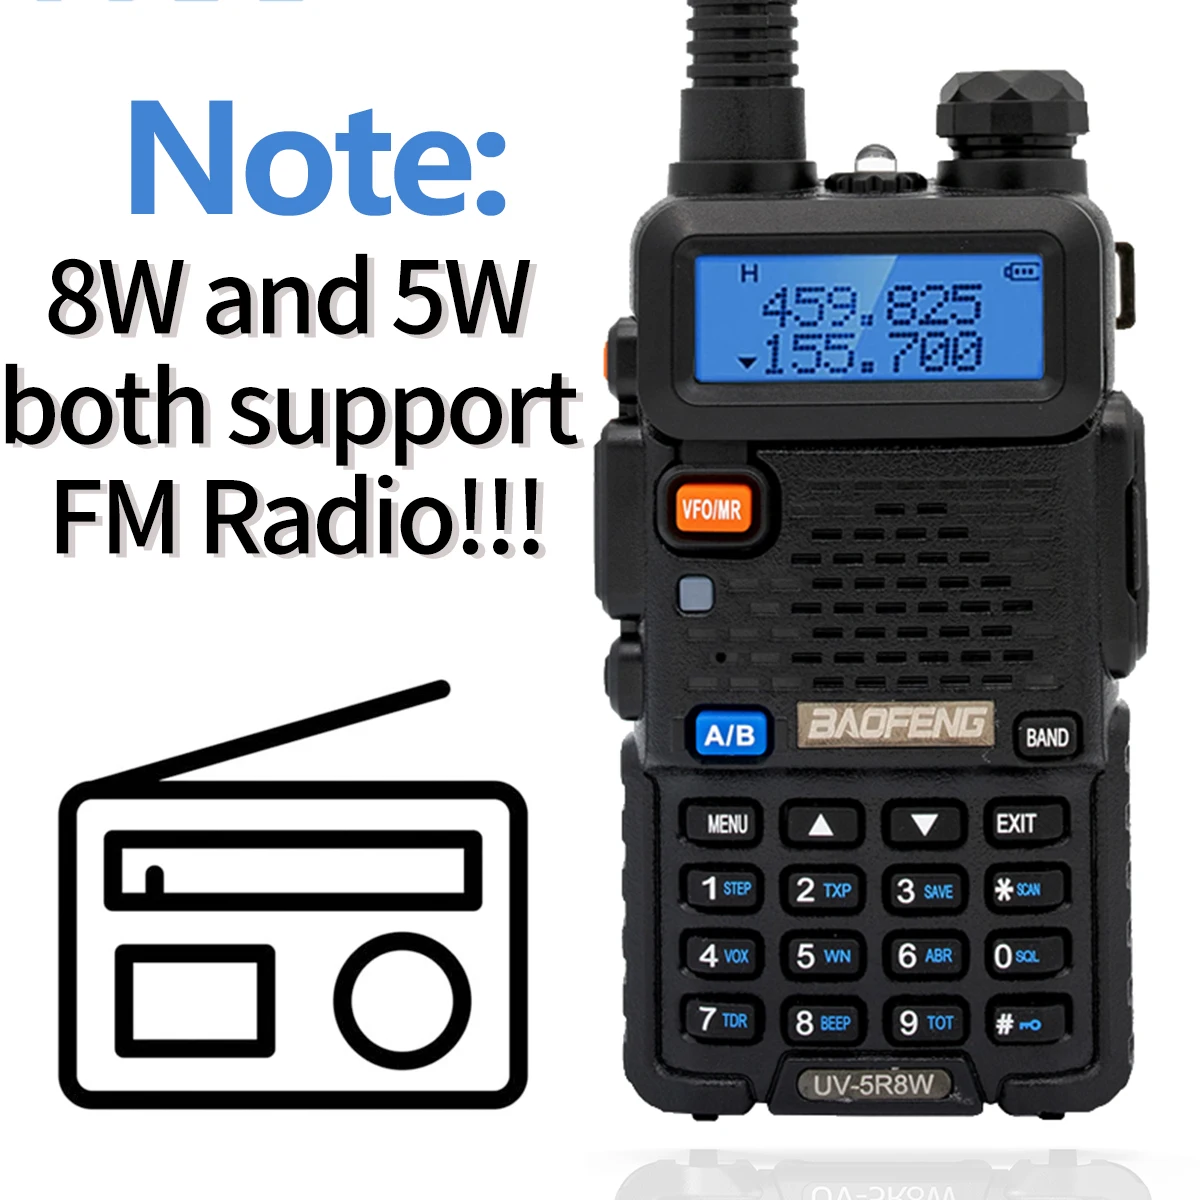 2PCS Baofeng UV-5R 5W/8W Walkie Talkie UV 5R High Power Amateur Ham CB Radio Station UV5R Dual Band Transceiver 10KM Intercom